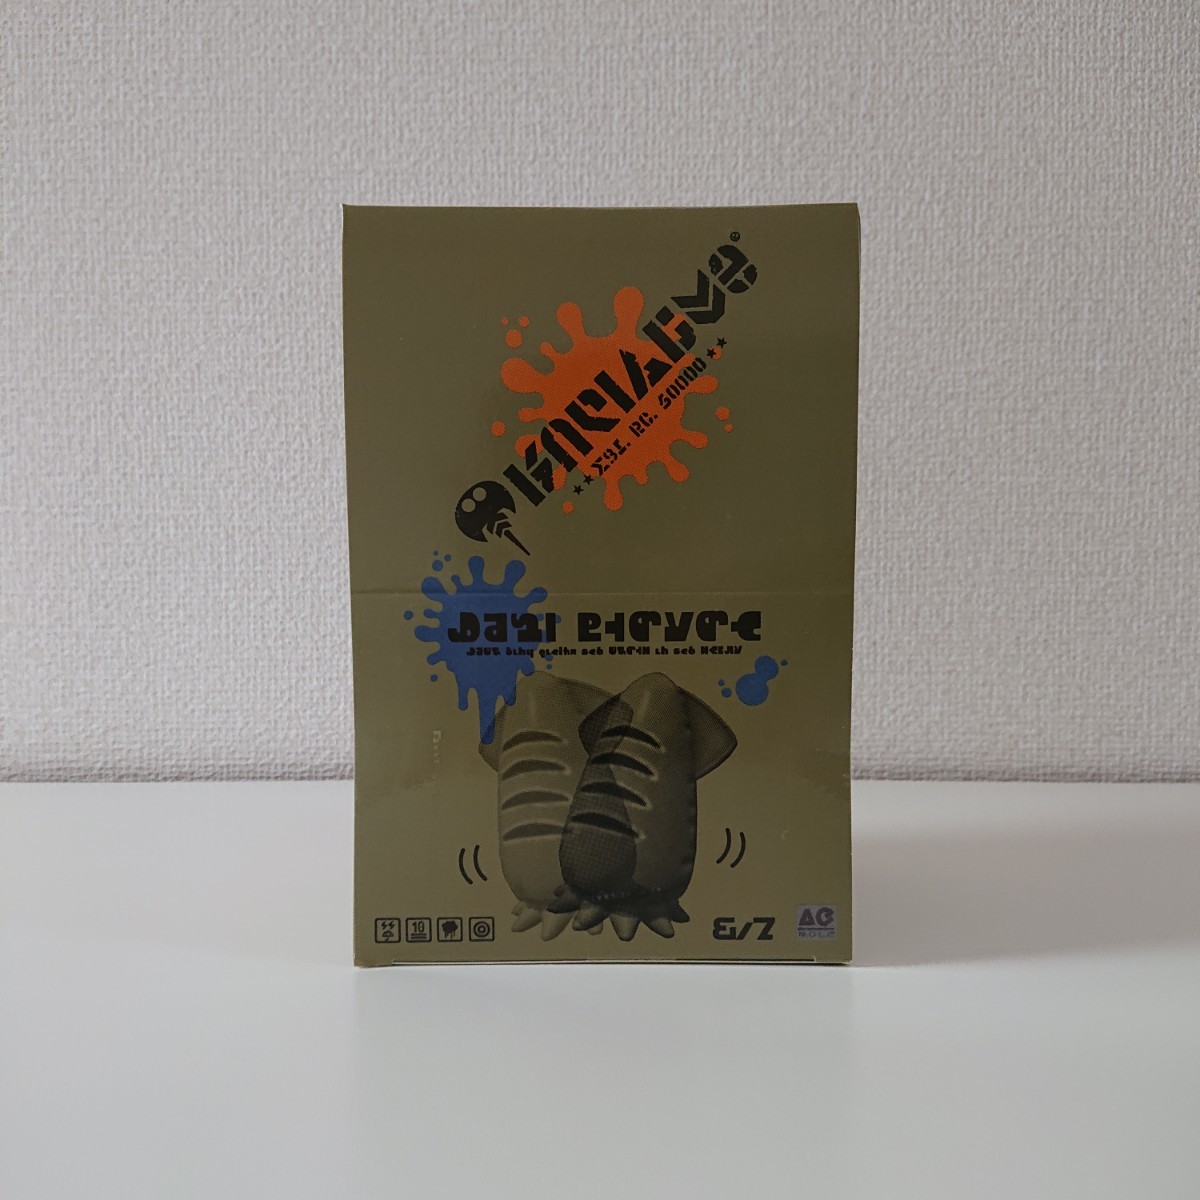 ★新品★ スプラトゥーン プチイカバンカーコレクション BOXセット 6種類